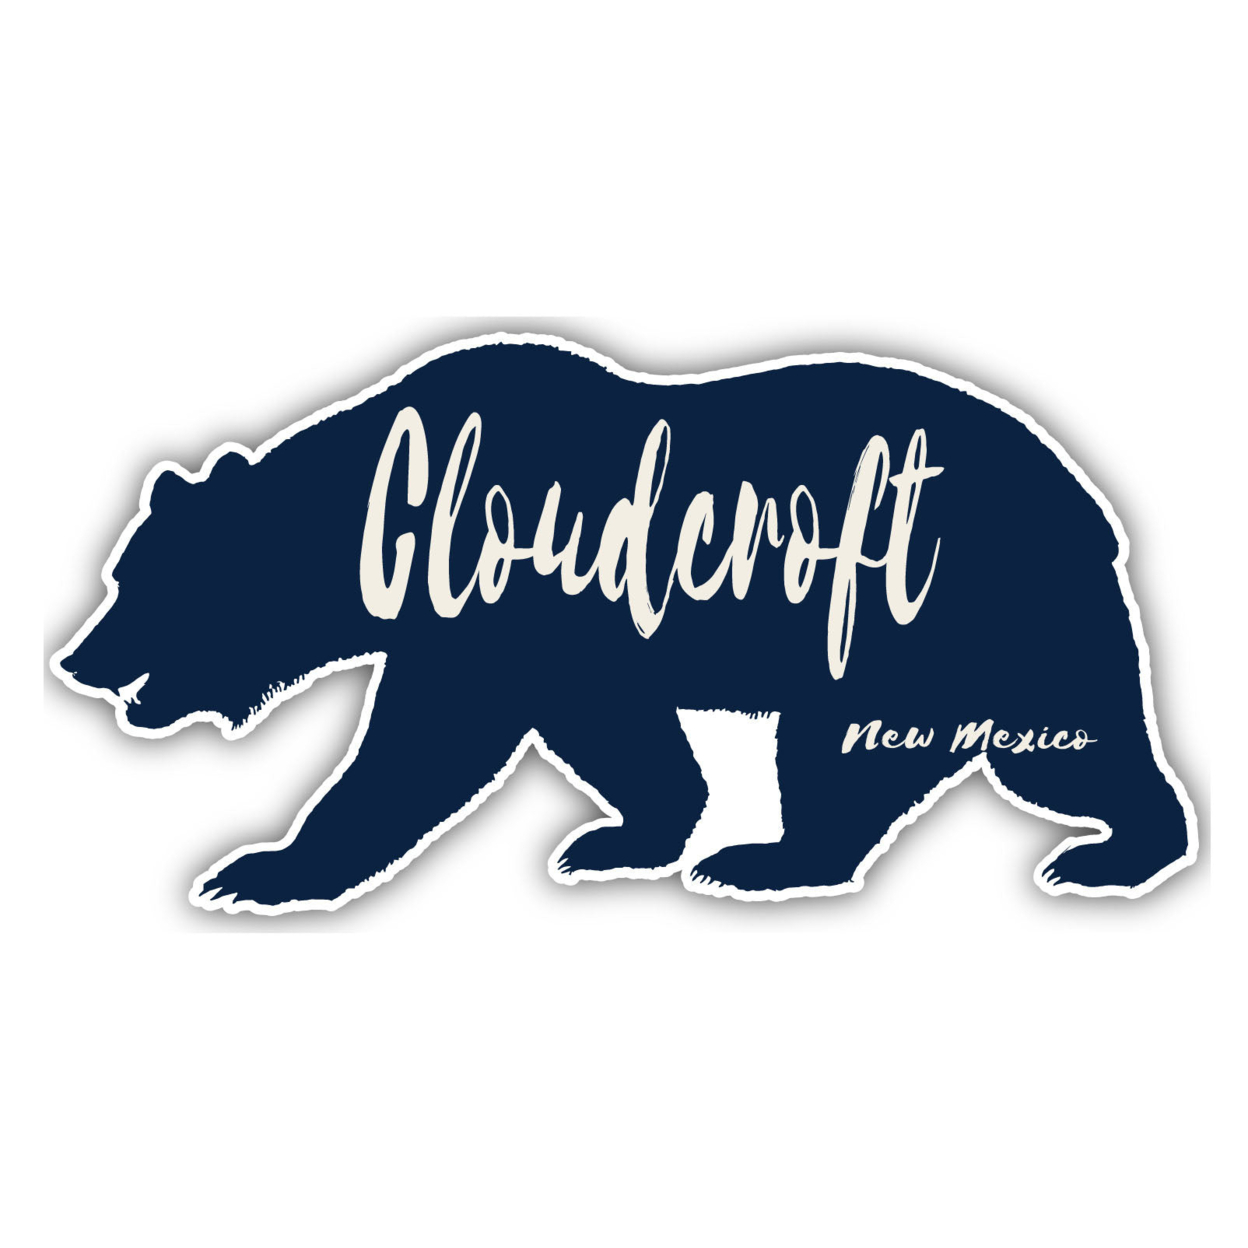 Cloudcroft New Mexico Souvenir Decorative Stickers (Choose Theme And Size) - Single Unit, 8-Inch, Tent